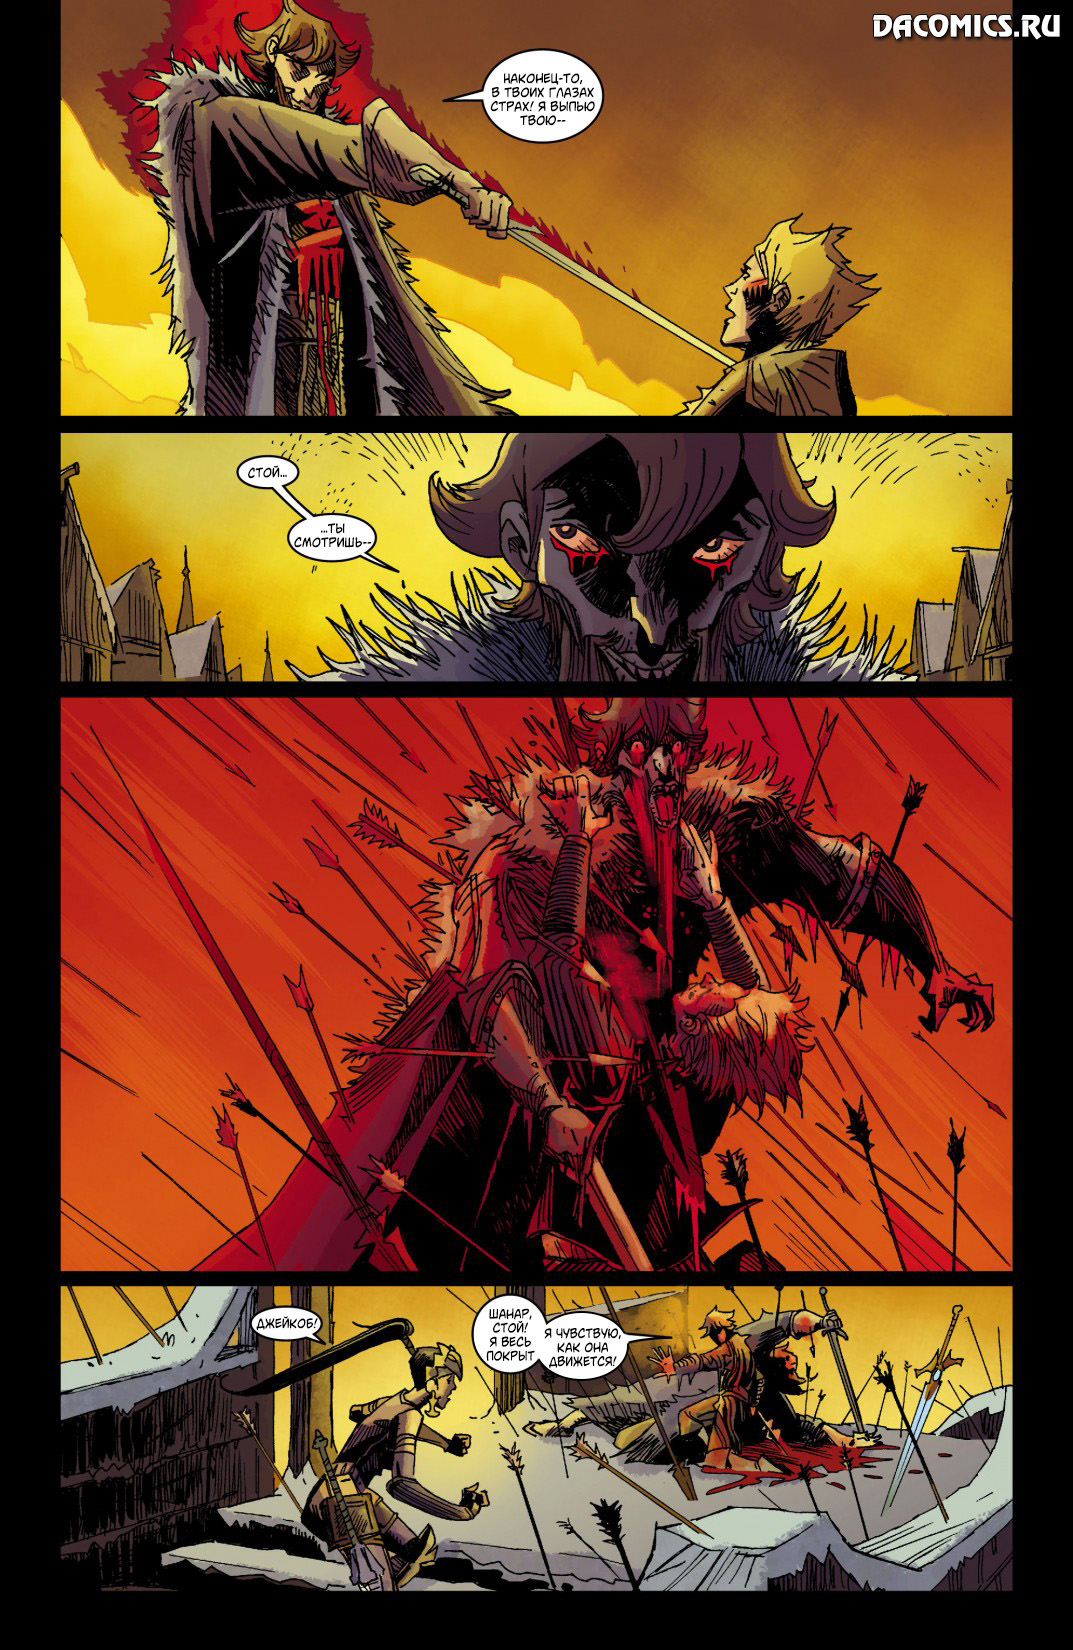 Diablo 3 Comics. Питер Грубер меч правосудия. Возьми меч правосудия. Sword of justice